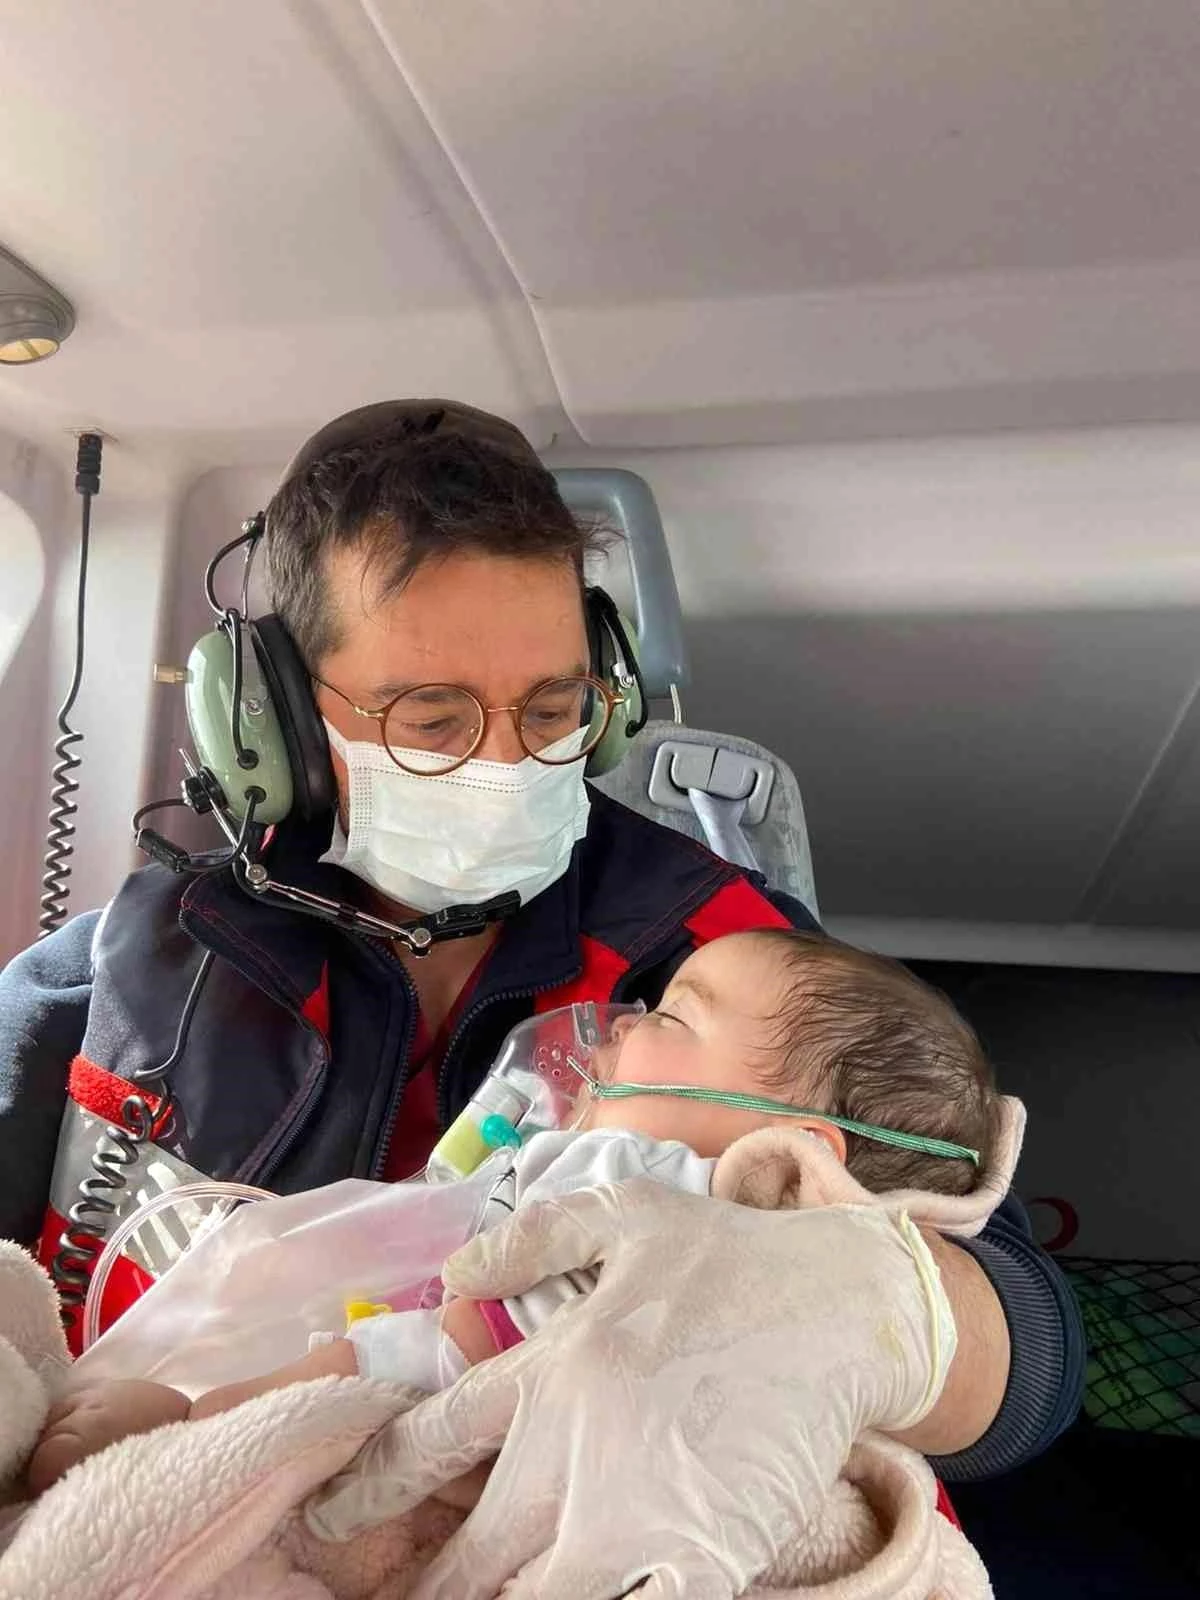 Son dakika haber: Solunum sıkıntısı çeken 6 aylık bebek ambulans helikopterle hastaneye sevk edildi